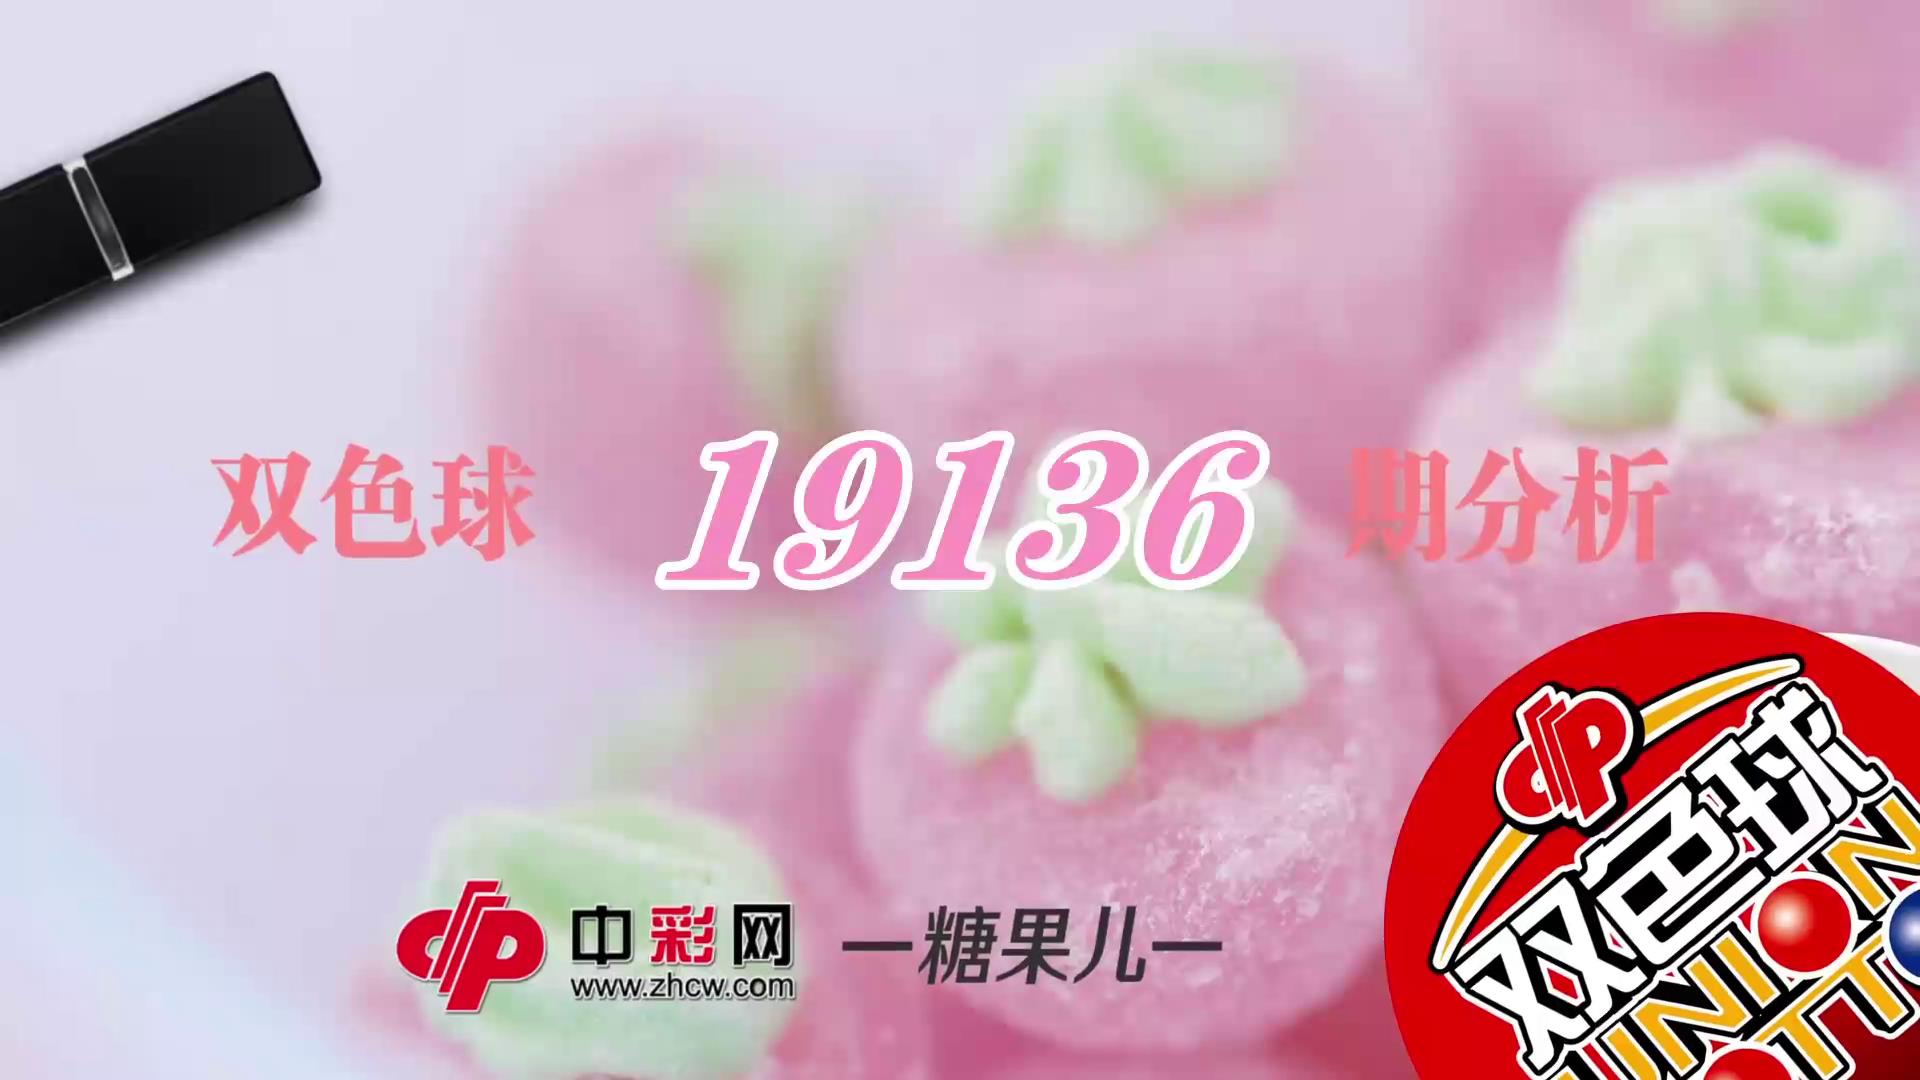 【中彩视频】糖果儿双色球第19136期